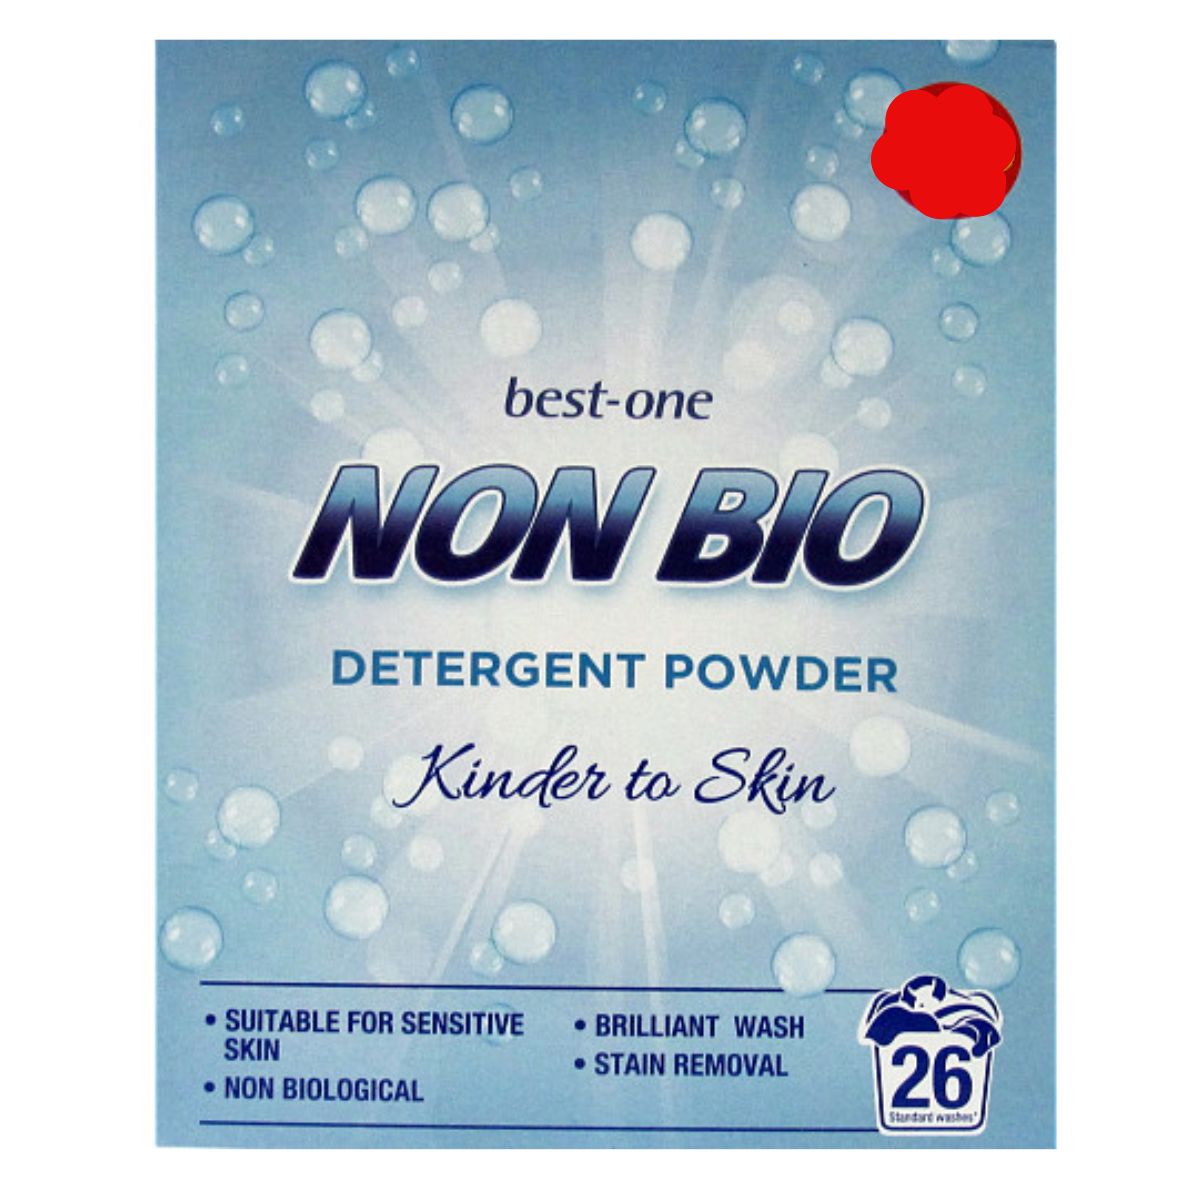 Best One - Non Bio Detergent Powder - 26Wash is the best one non-bio deterent powder.